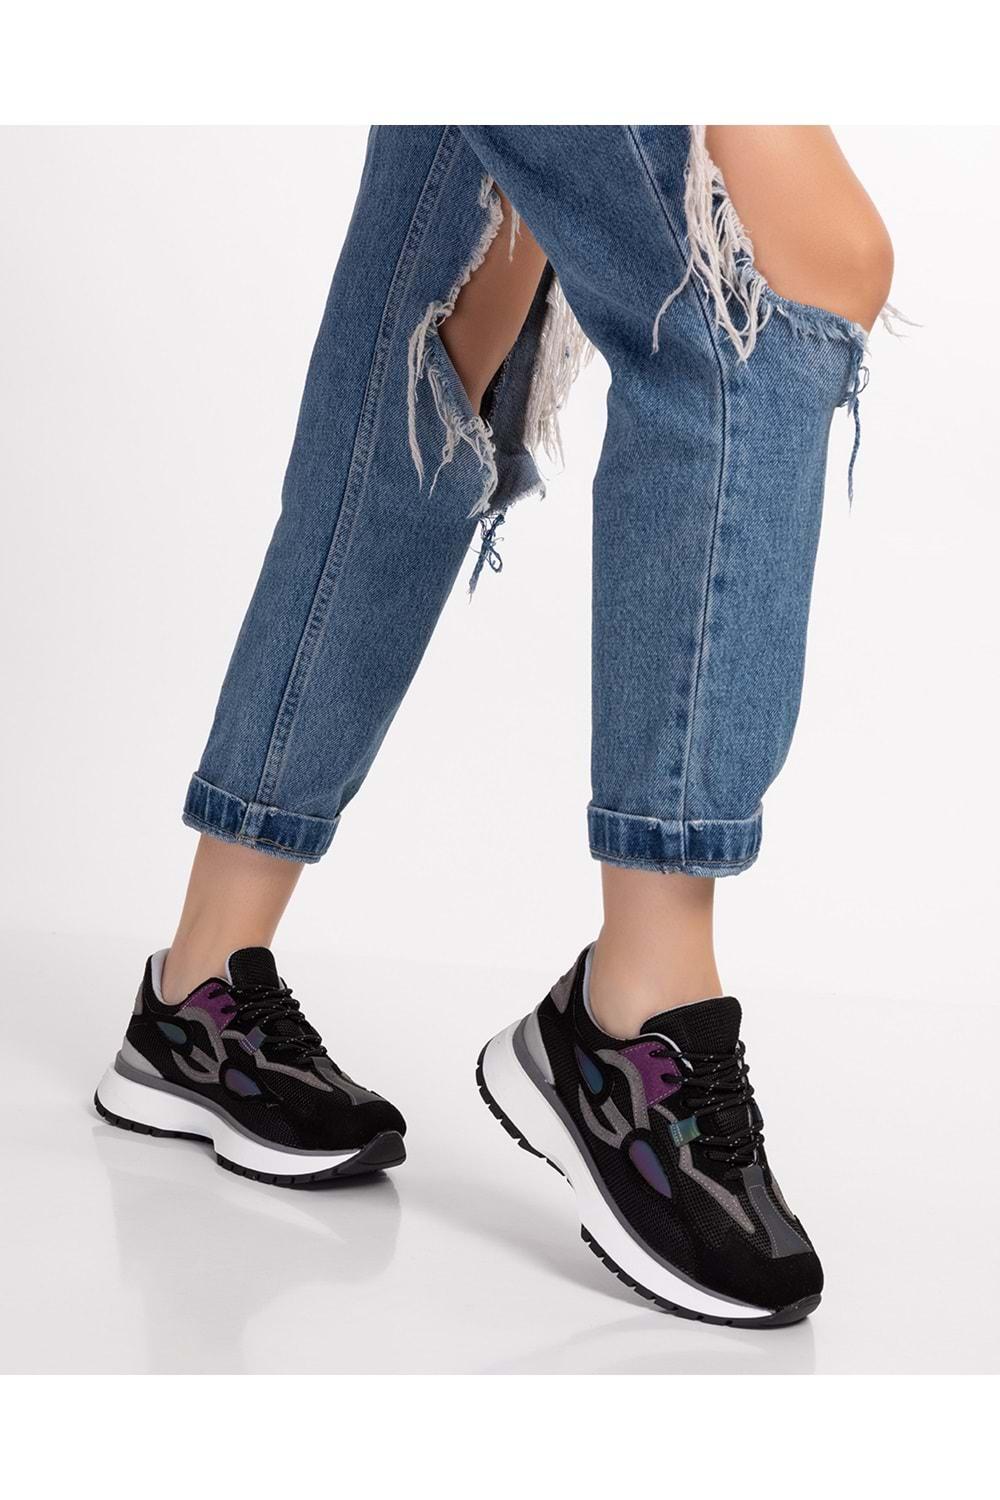 Gondol Sneakers Renkli Günlük Spor Ayakkabı mrs.6633 - Siyah - 39